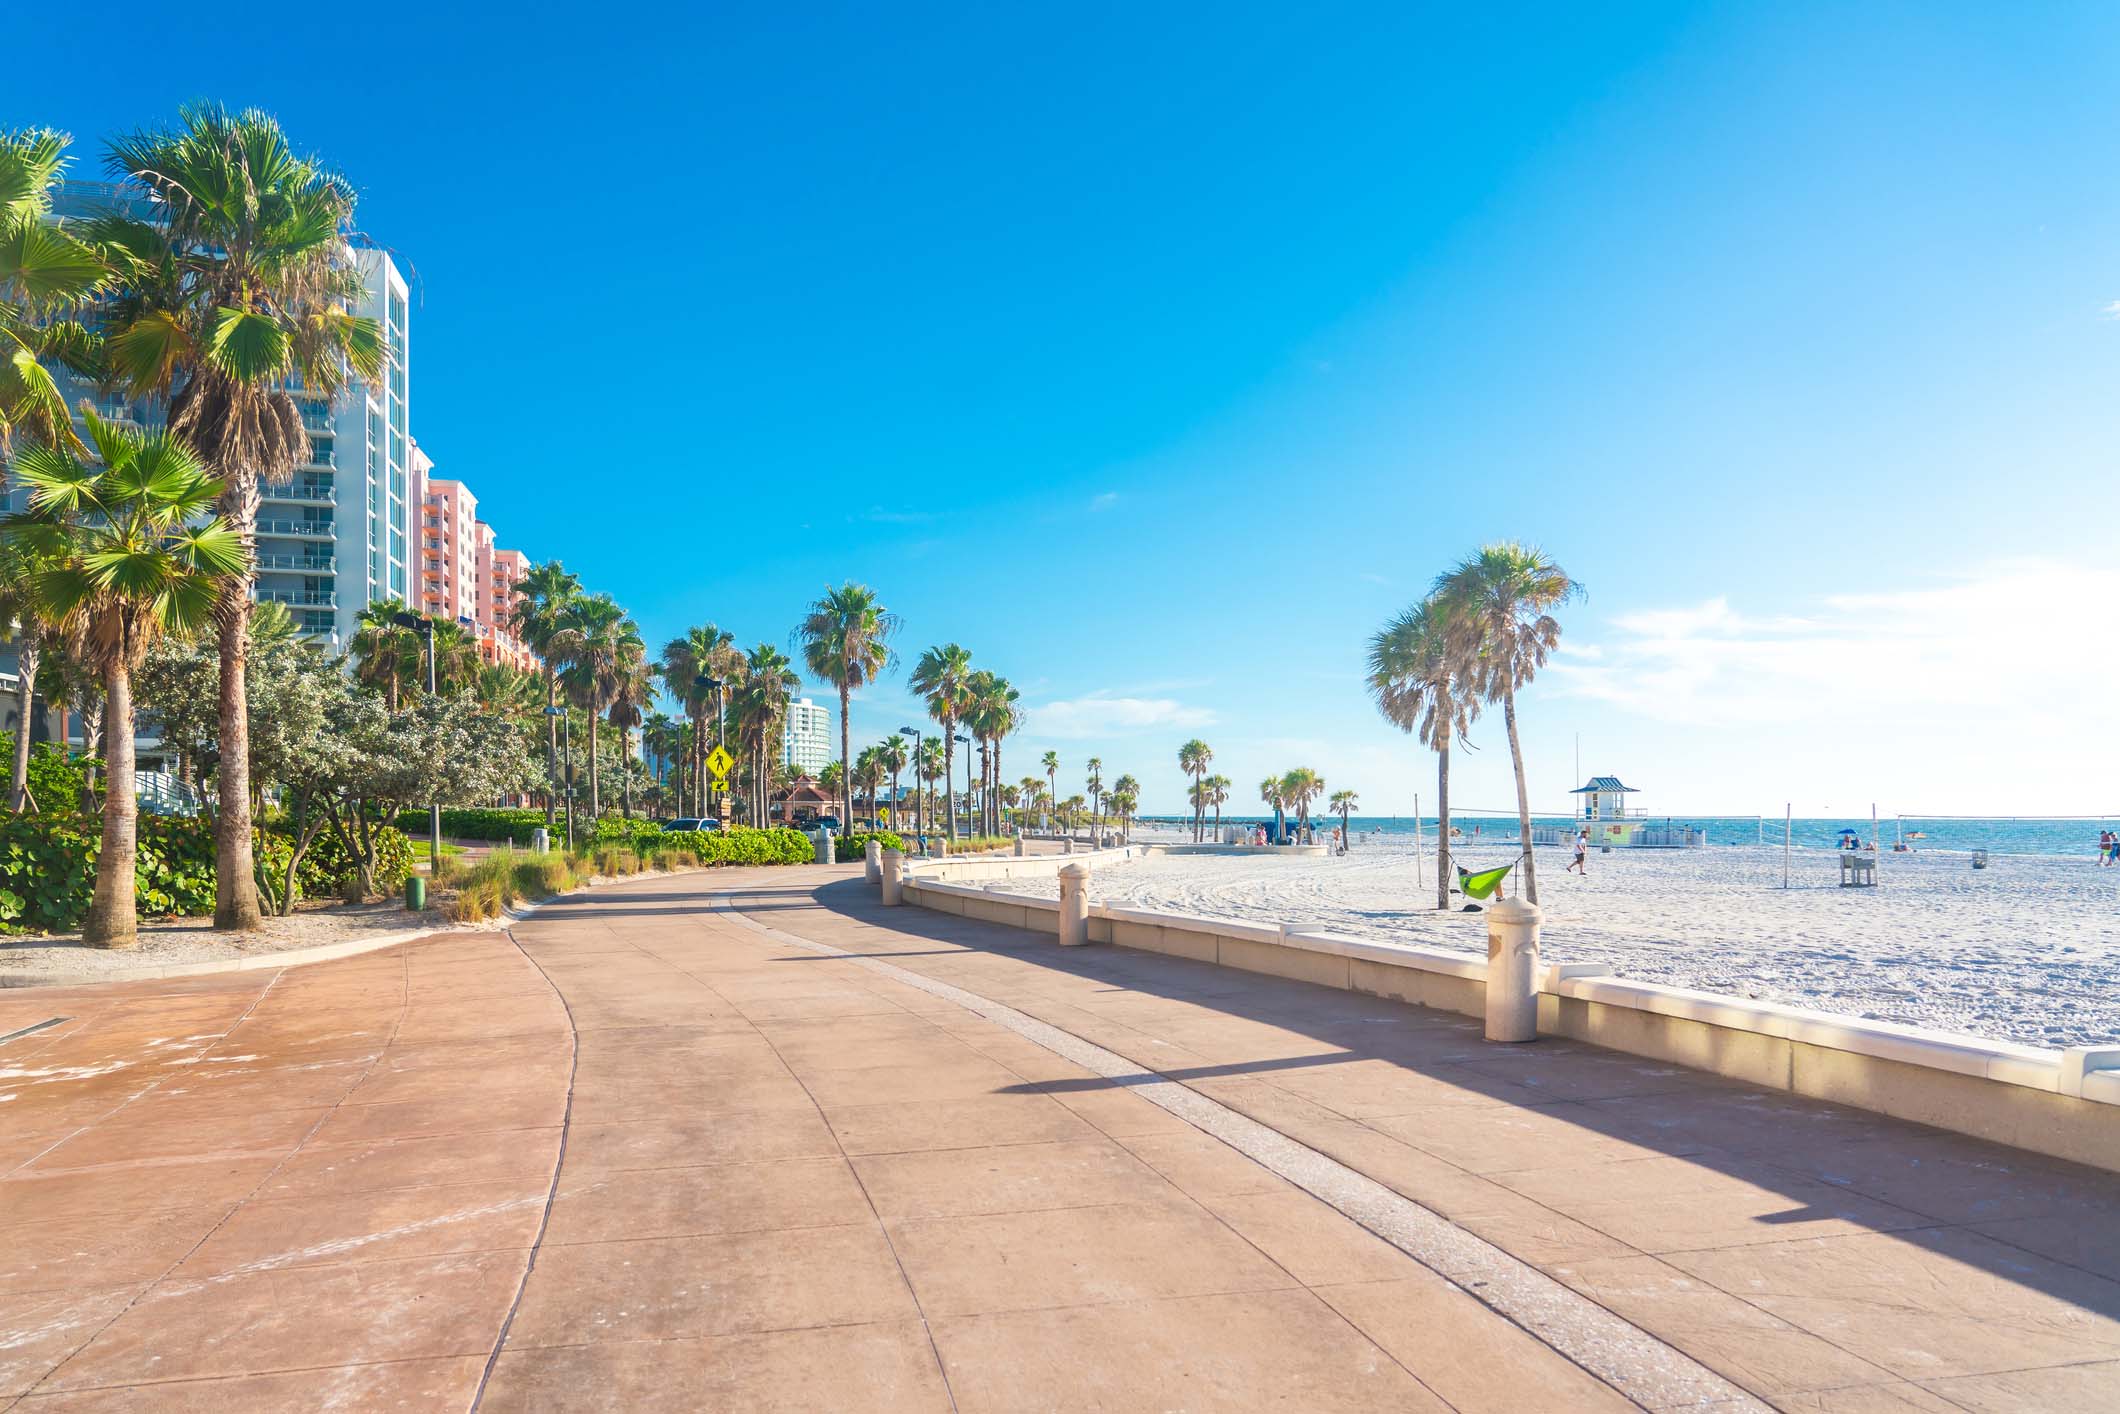 Florida beach sidewalk